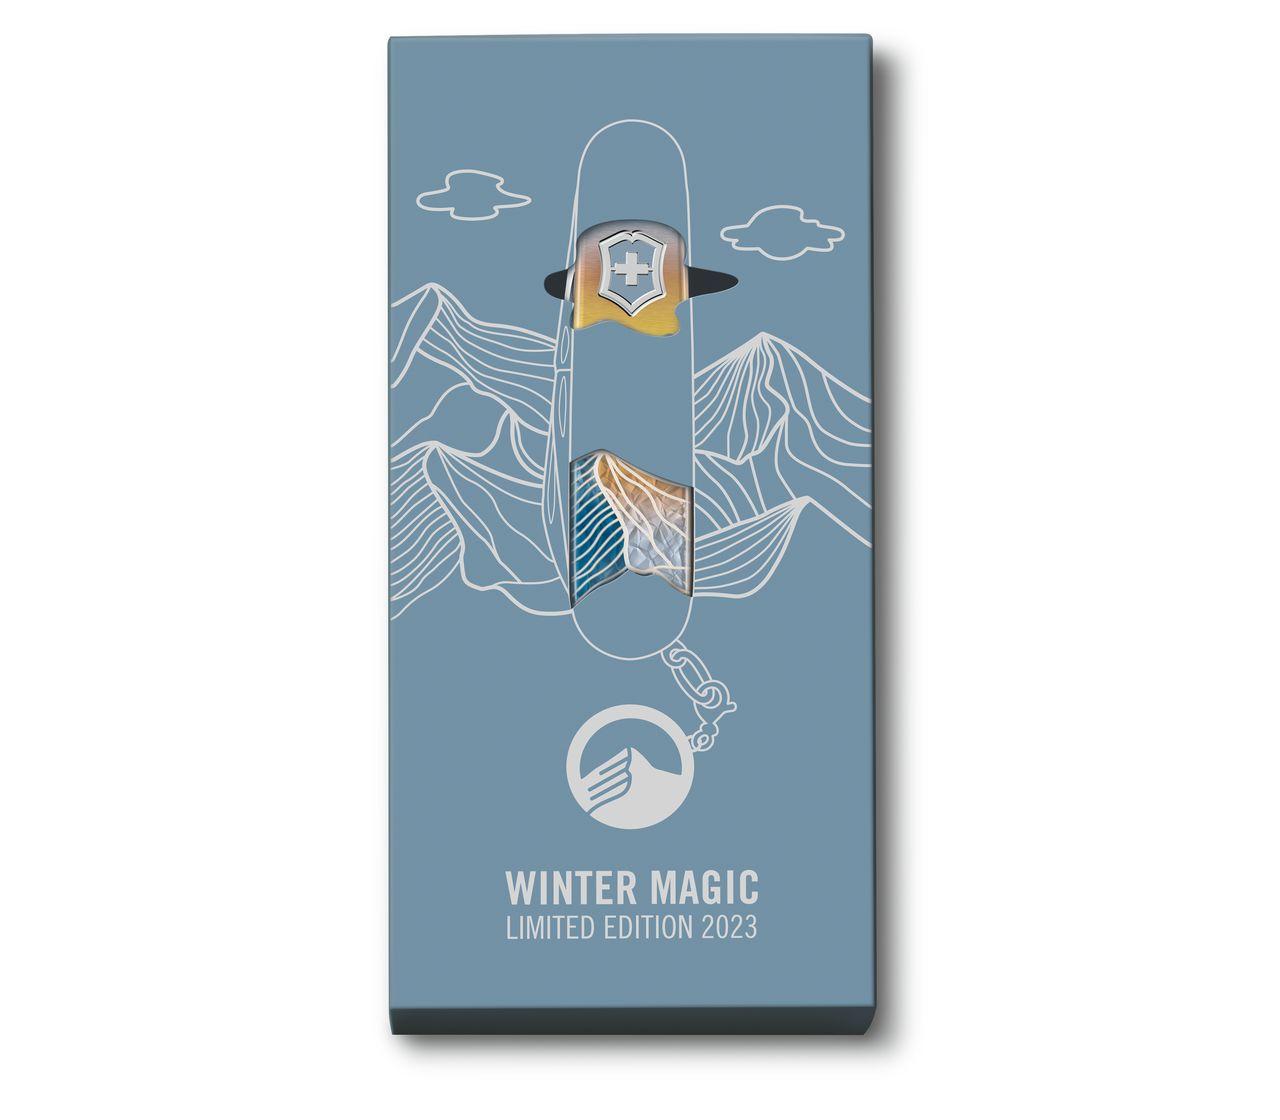 Victorinox Winter Magic Limited Edition 2023 in Powder Blue - 0.2601.22E1